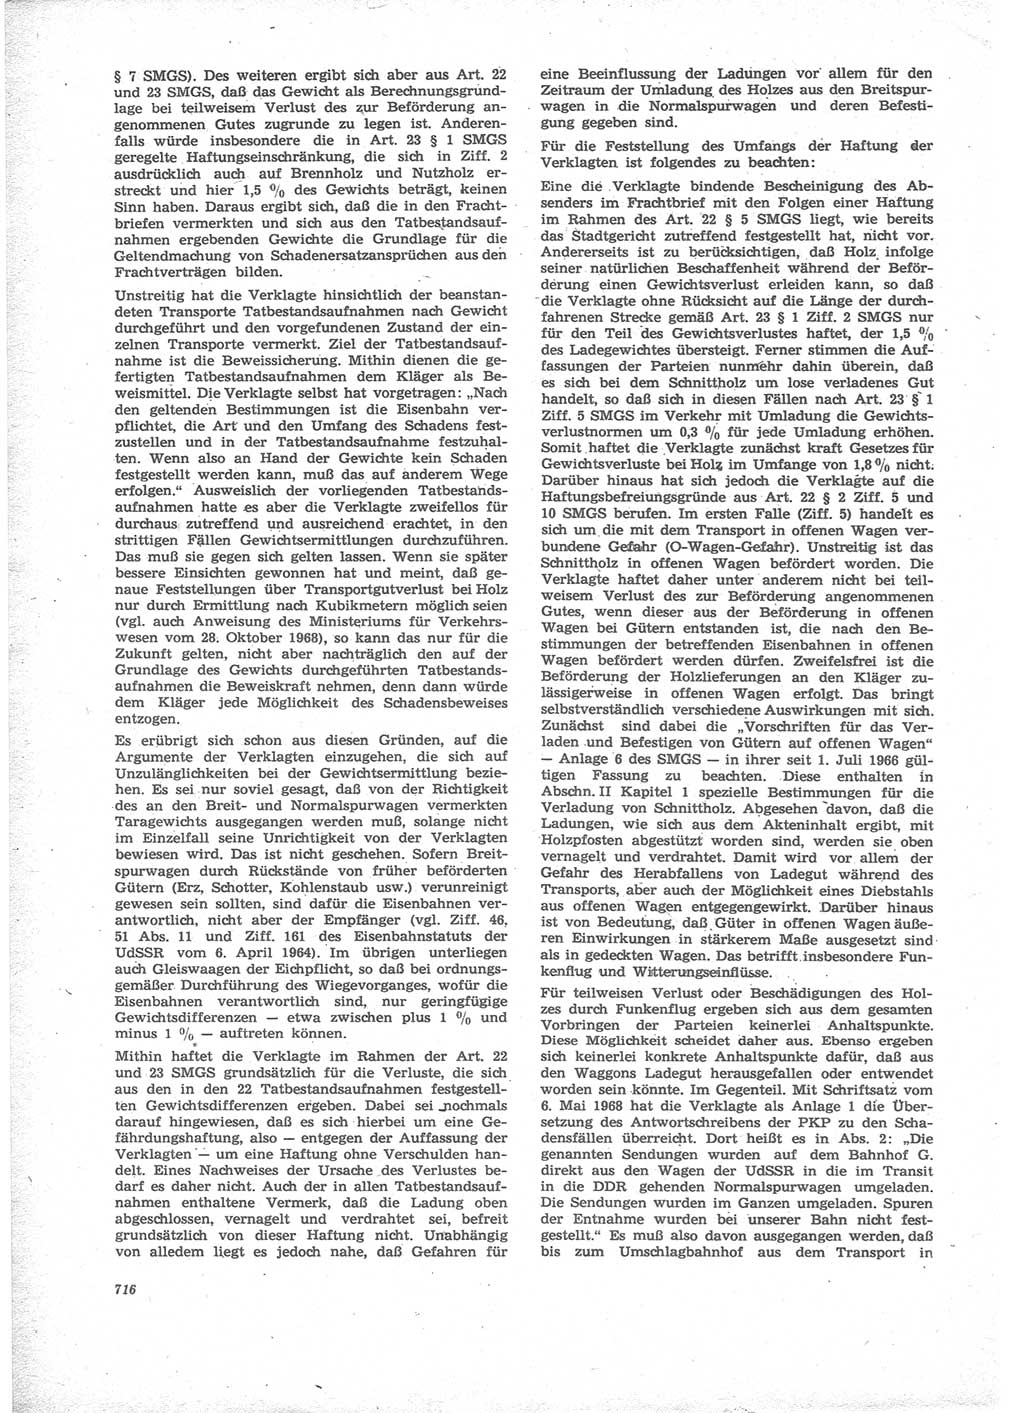 Neue Justiz (NJ), Zeitschrift für Recht und Rechtswissenschaft [Deutsche Demokratische Republik (DDR)], 24. Jahrgang 1970, Seite 716 (NJ DDR 1970, S. 716)